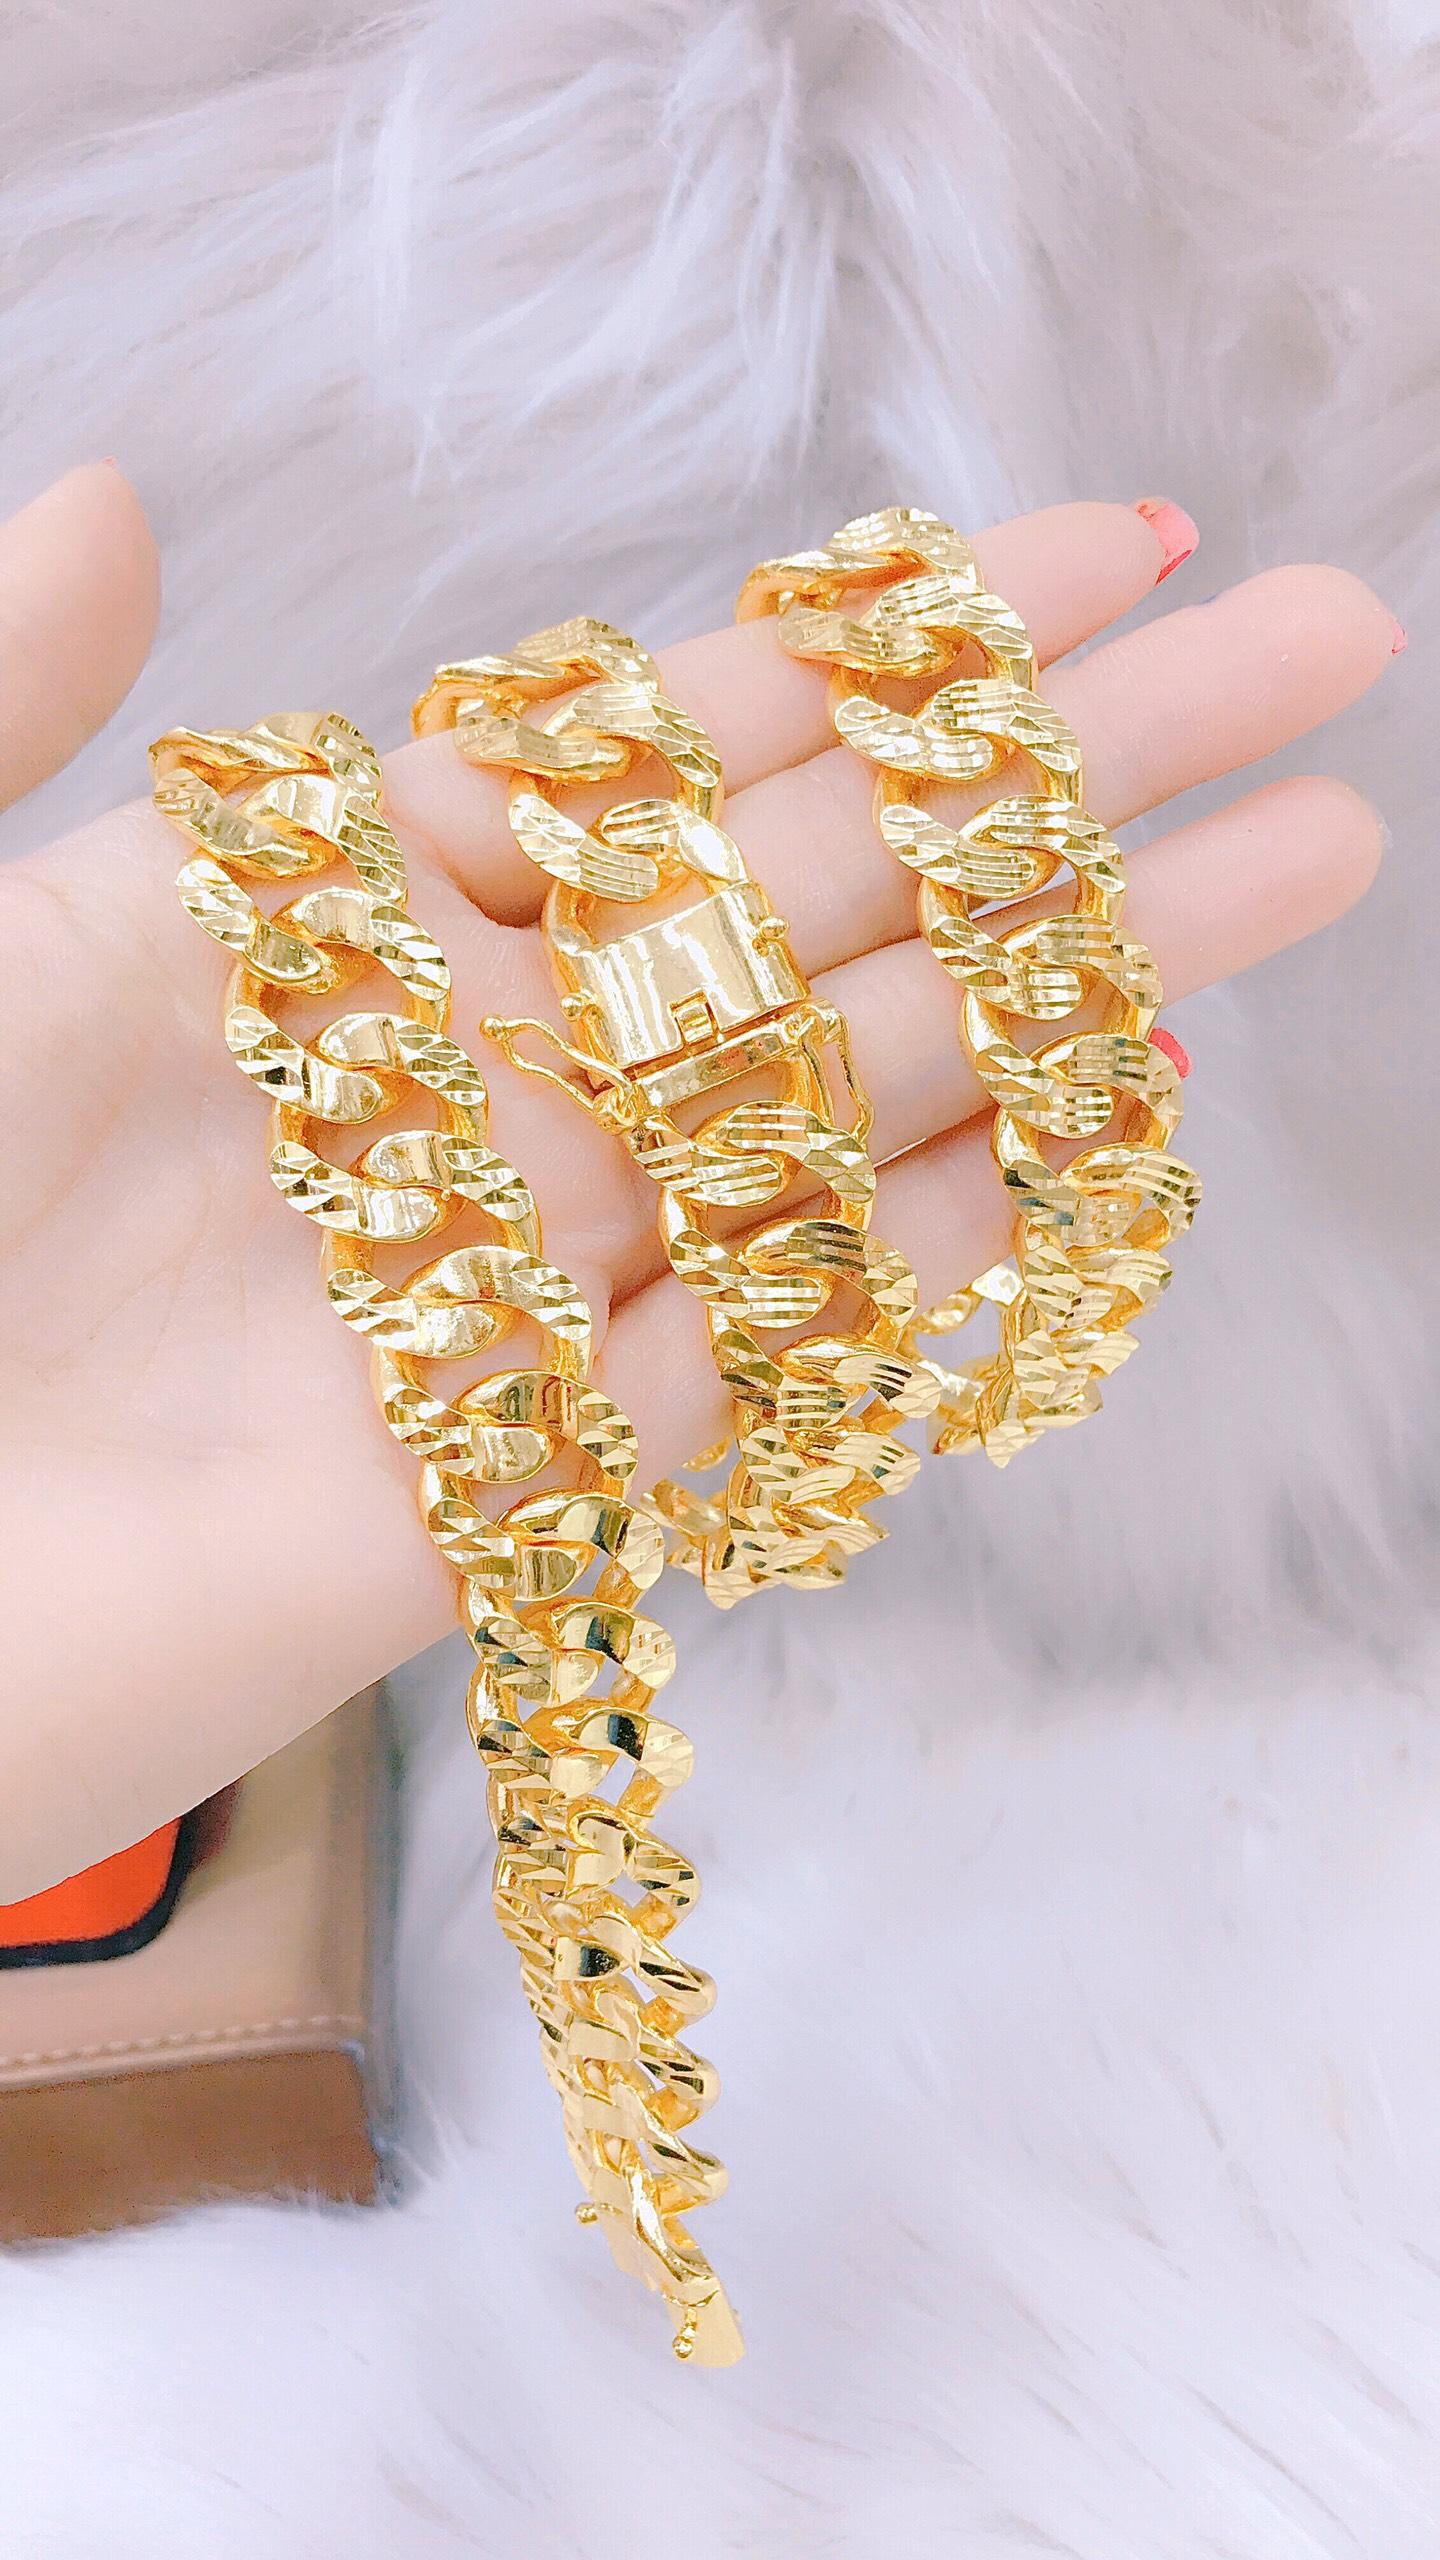 Lắc tay nữ mặt hoa vàng 18k cao cấp giống vàng thật 99% được thiết kế tinh sảo, tạo nên sự đẳng cấp cho người đeo. Với chất liệu vàng cao cấp, sản phẩm này sẽ trở thành món phụ kiện giúp nàng tỏa sáng và rực rỡ hơn trong mỗi dịp quan trọng.